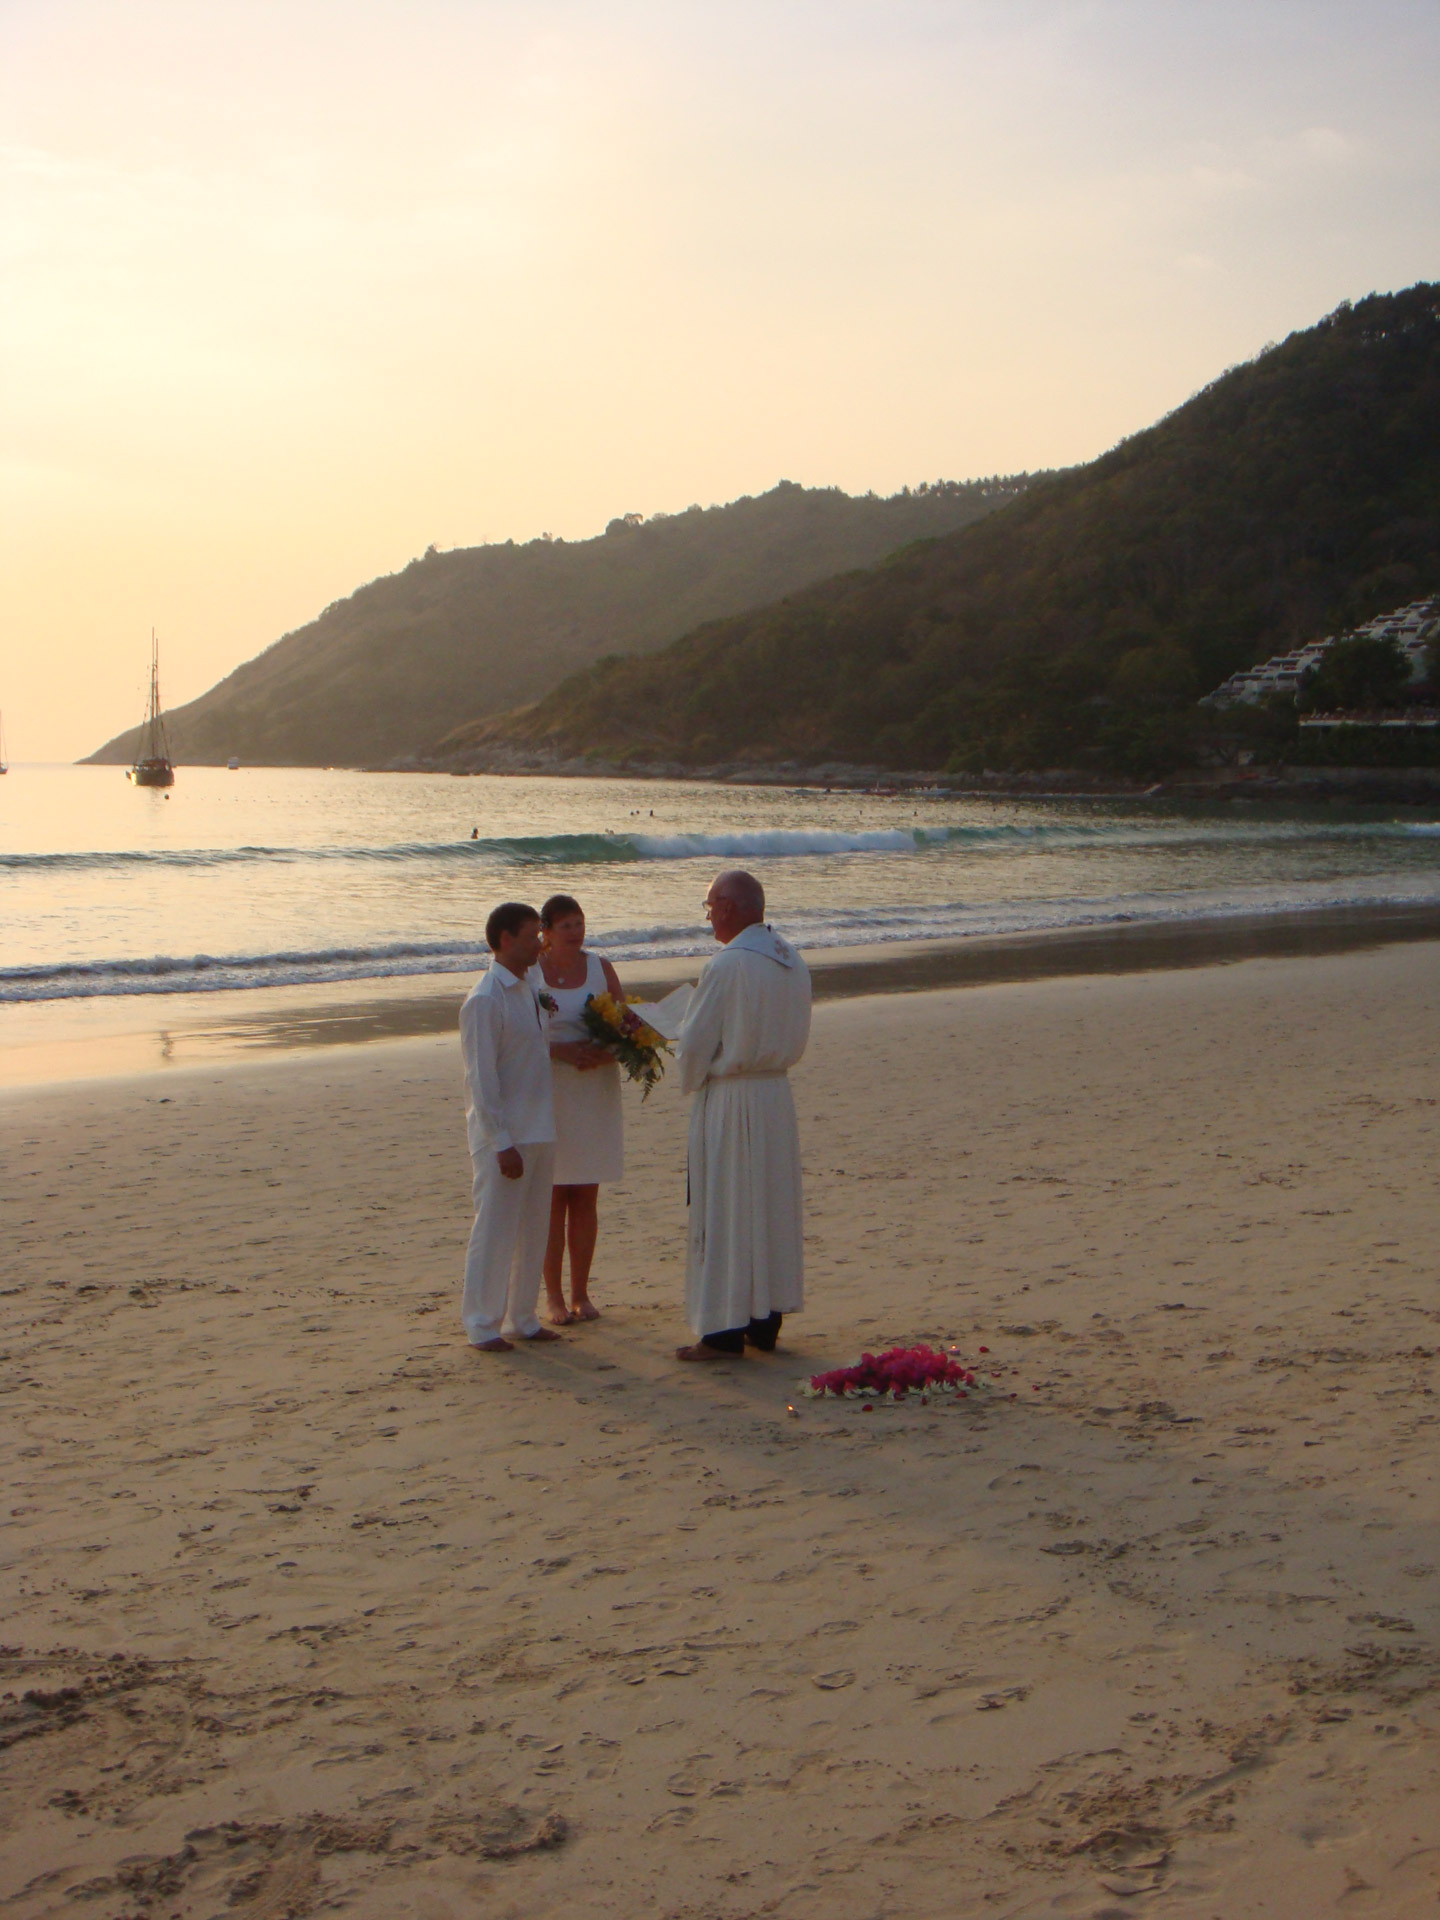 https://www.publicdomainpictures.net/pictures/20000/velka/beach-wedding.jpg